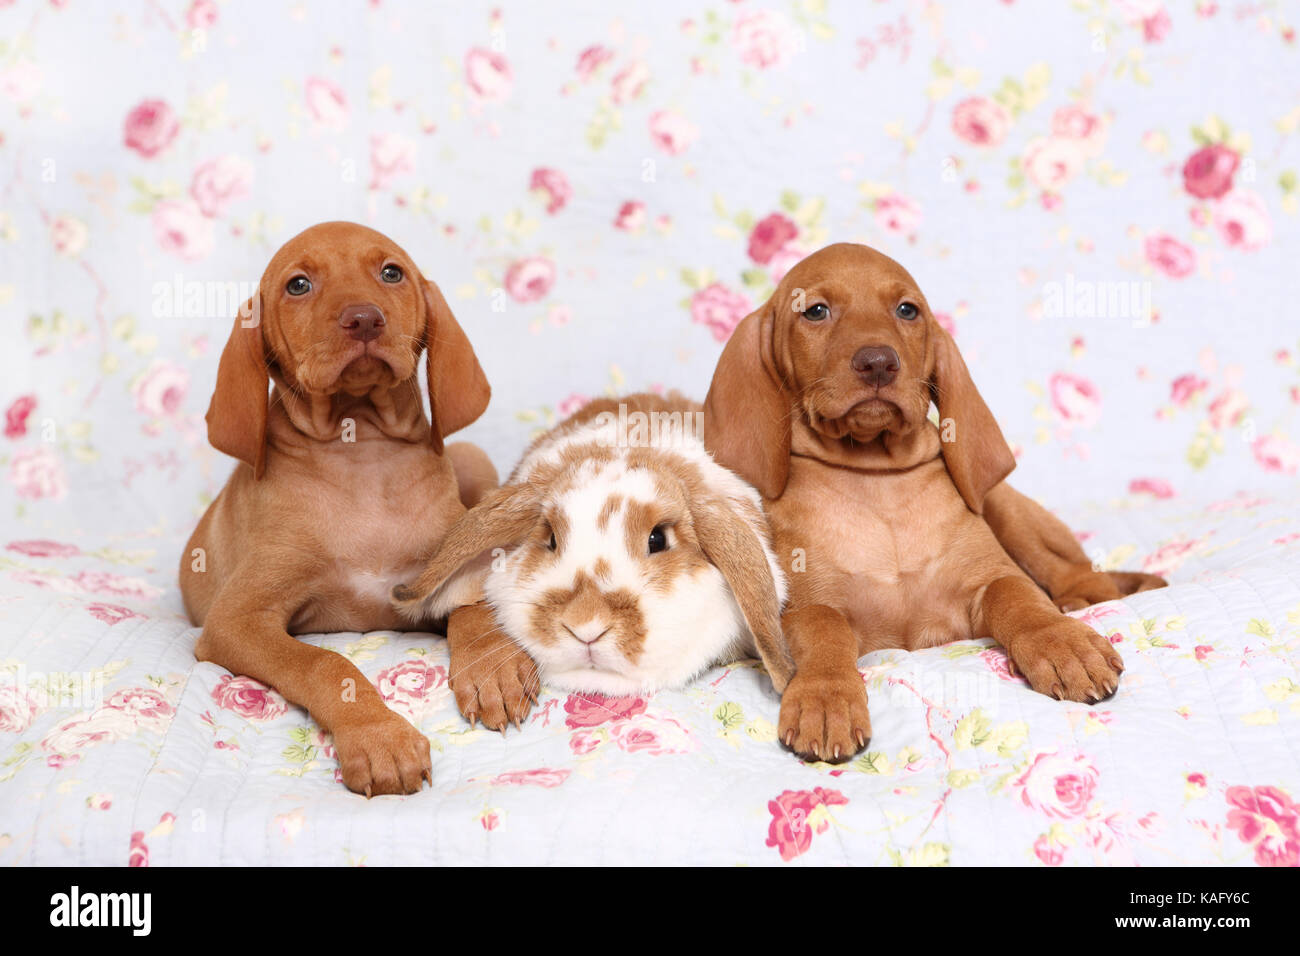 Vizsla devint. Deux chiots (6 semaines) et le hibou lapin bélier nain couché sur une couverture bleue avec fleur rose imprimer. Allemagne Banque D'Images